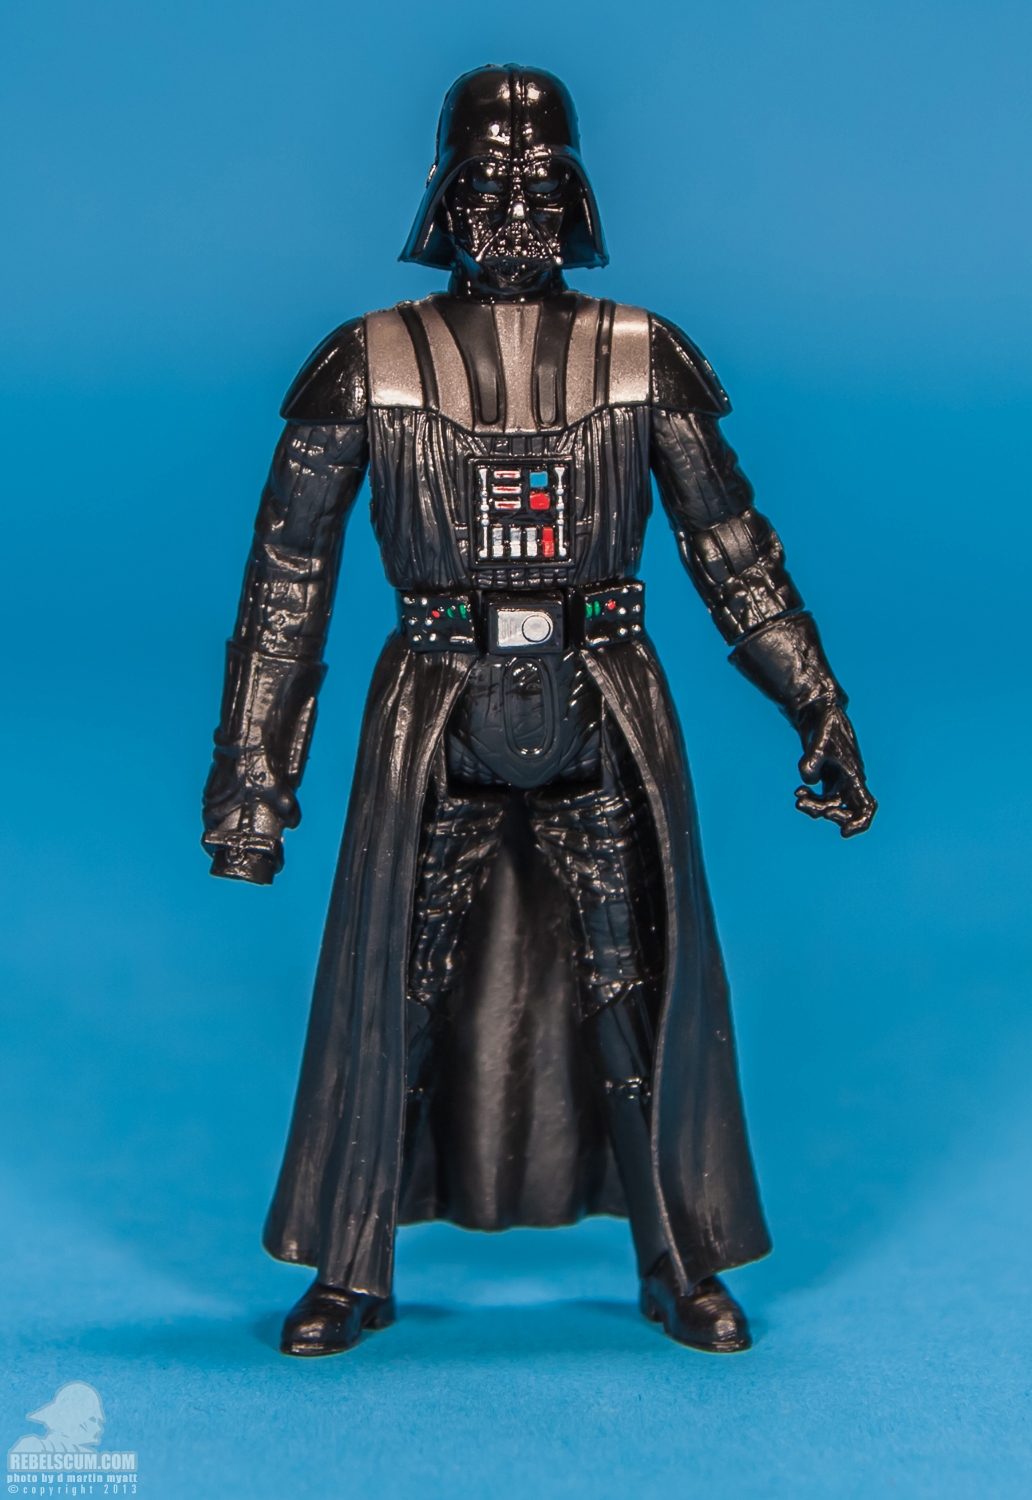 MH01_2013_Darth_Vader_Movie_Heroes_Star_Wars-01.jpg